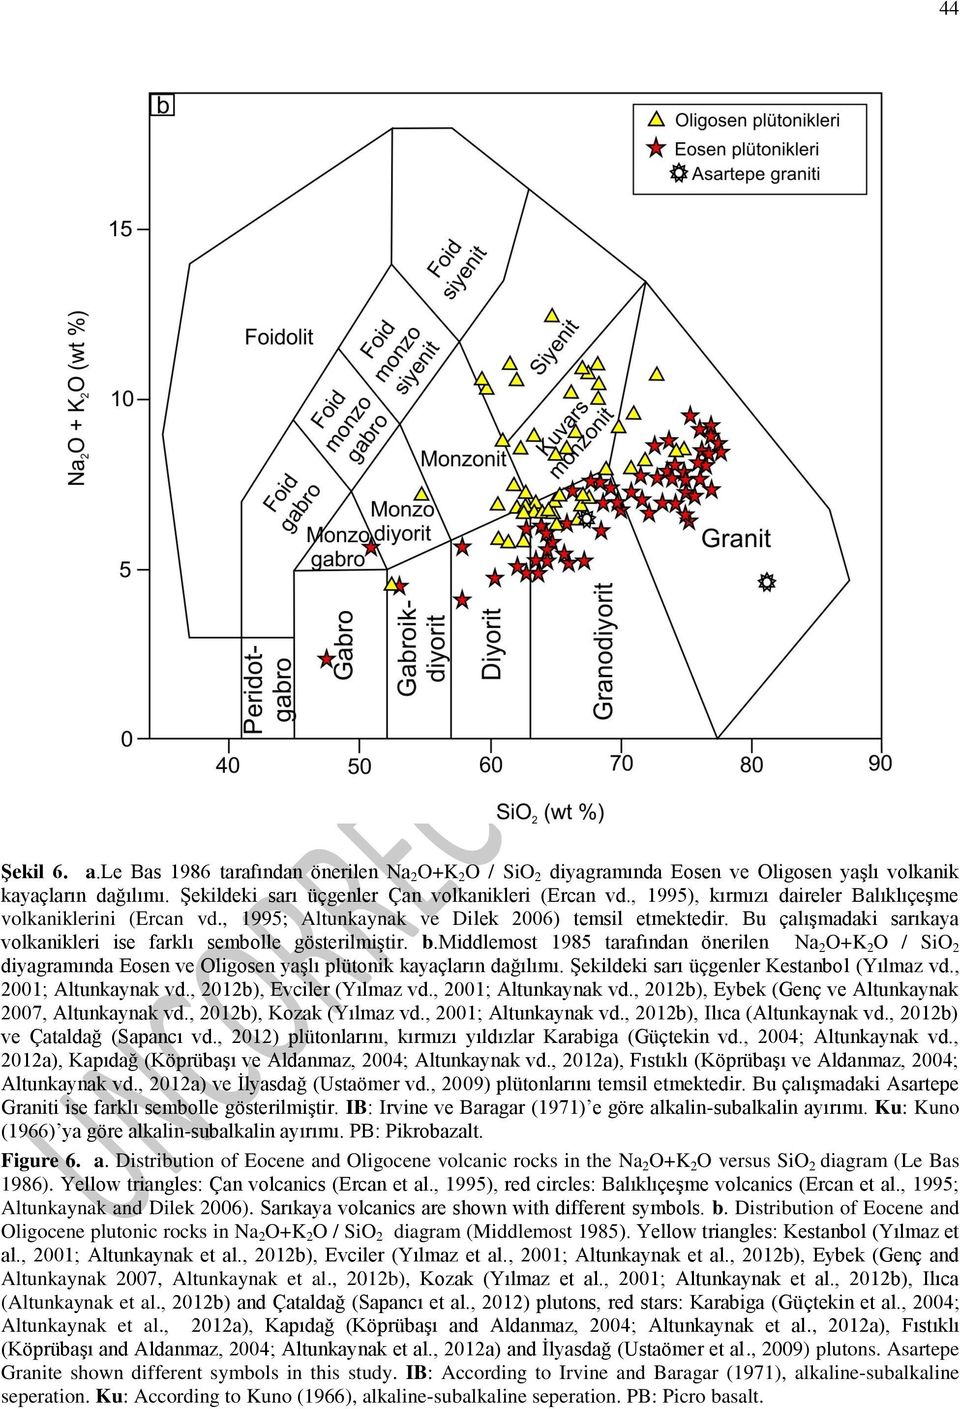 middlemost 1985 tarafından önerilen Na 2 O+K 2 O / SiO 2 diyagramında Eosen ve Oligosen yaşlı plütonik kayaçların dağılımı. Şekildeki sarı üçgenler Kestanbol (Yılmaz vd., 2001; Altunkaynak vd.